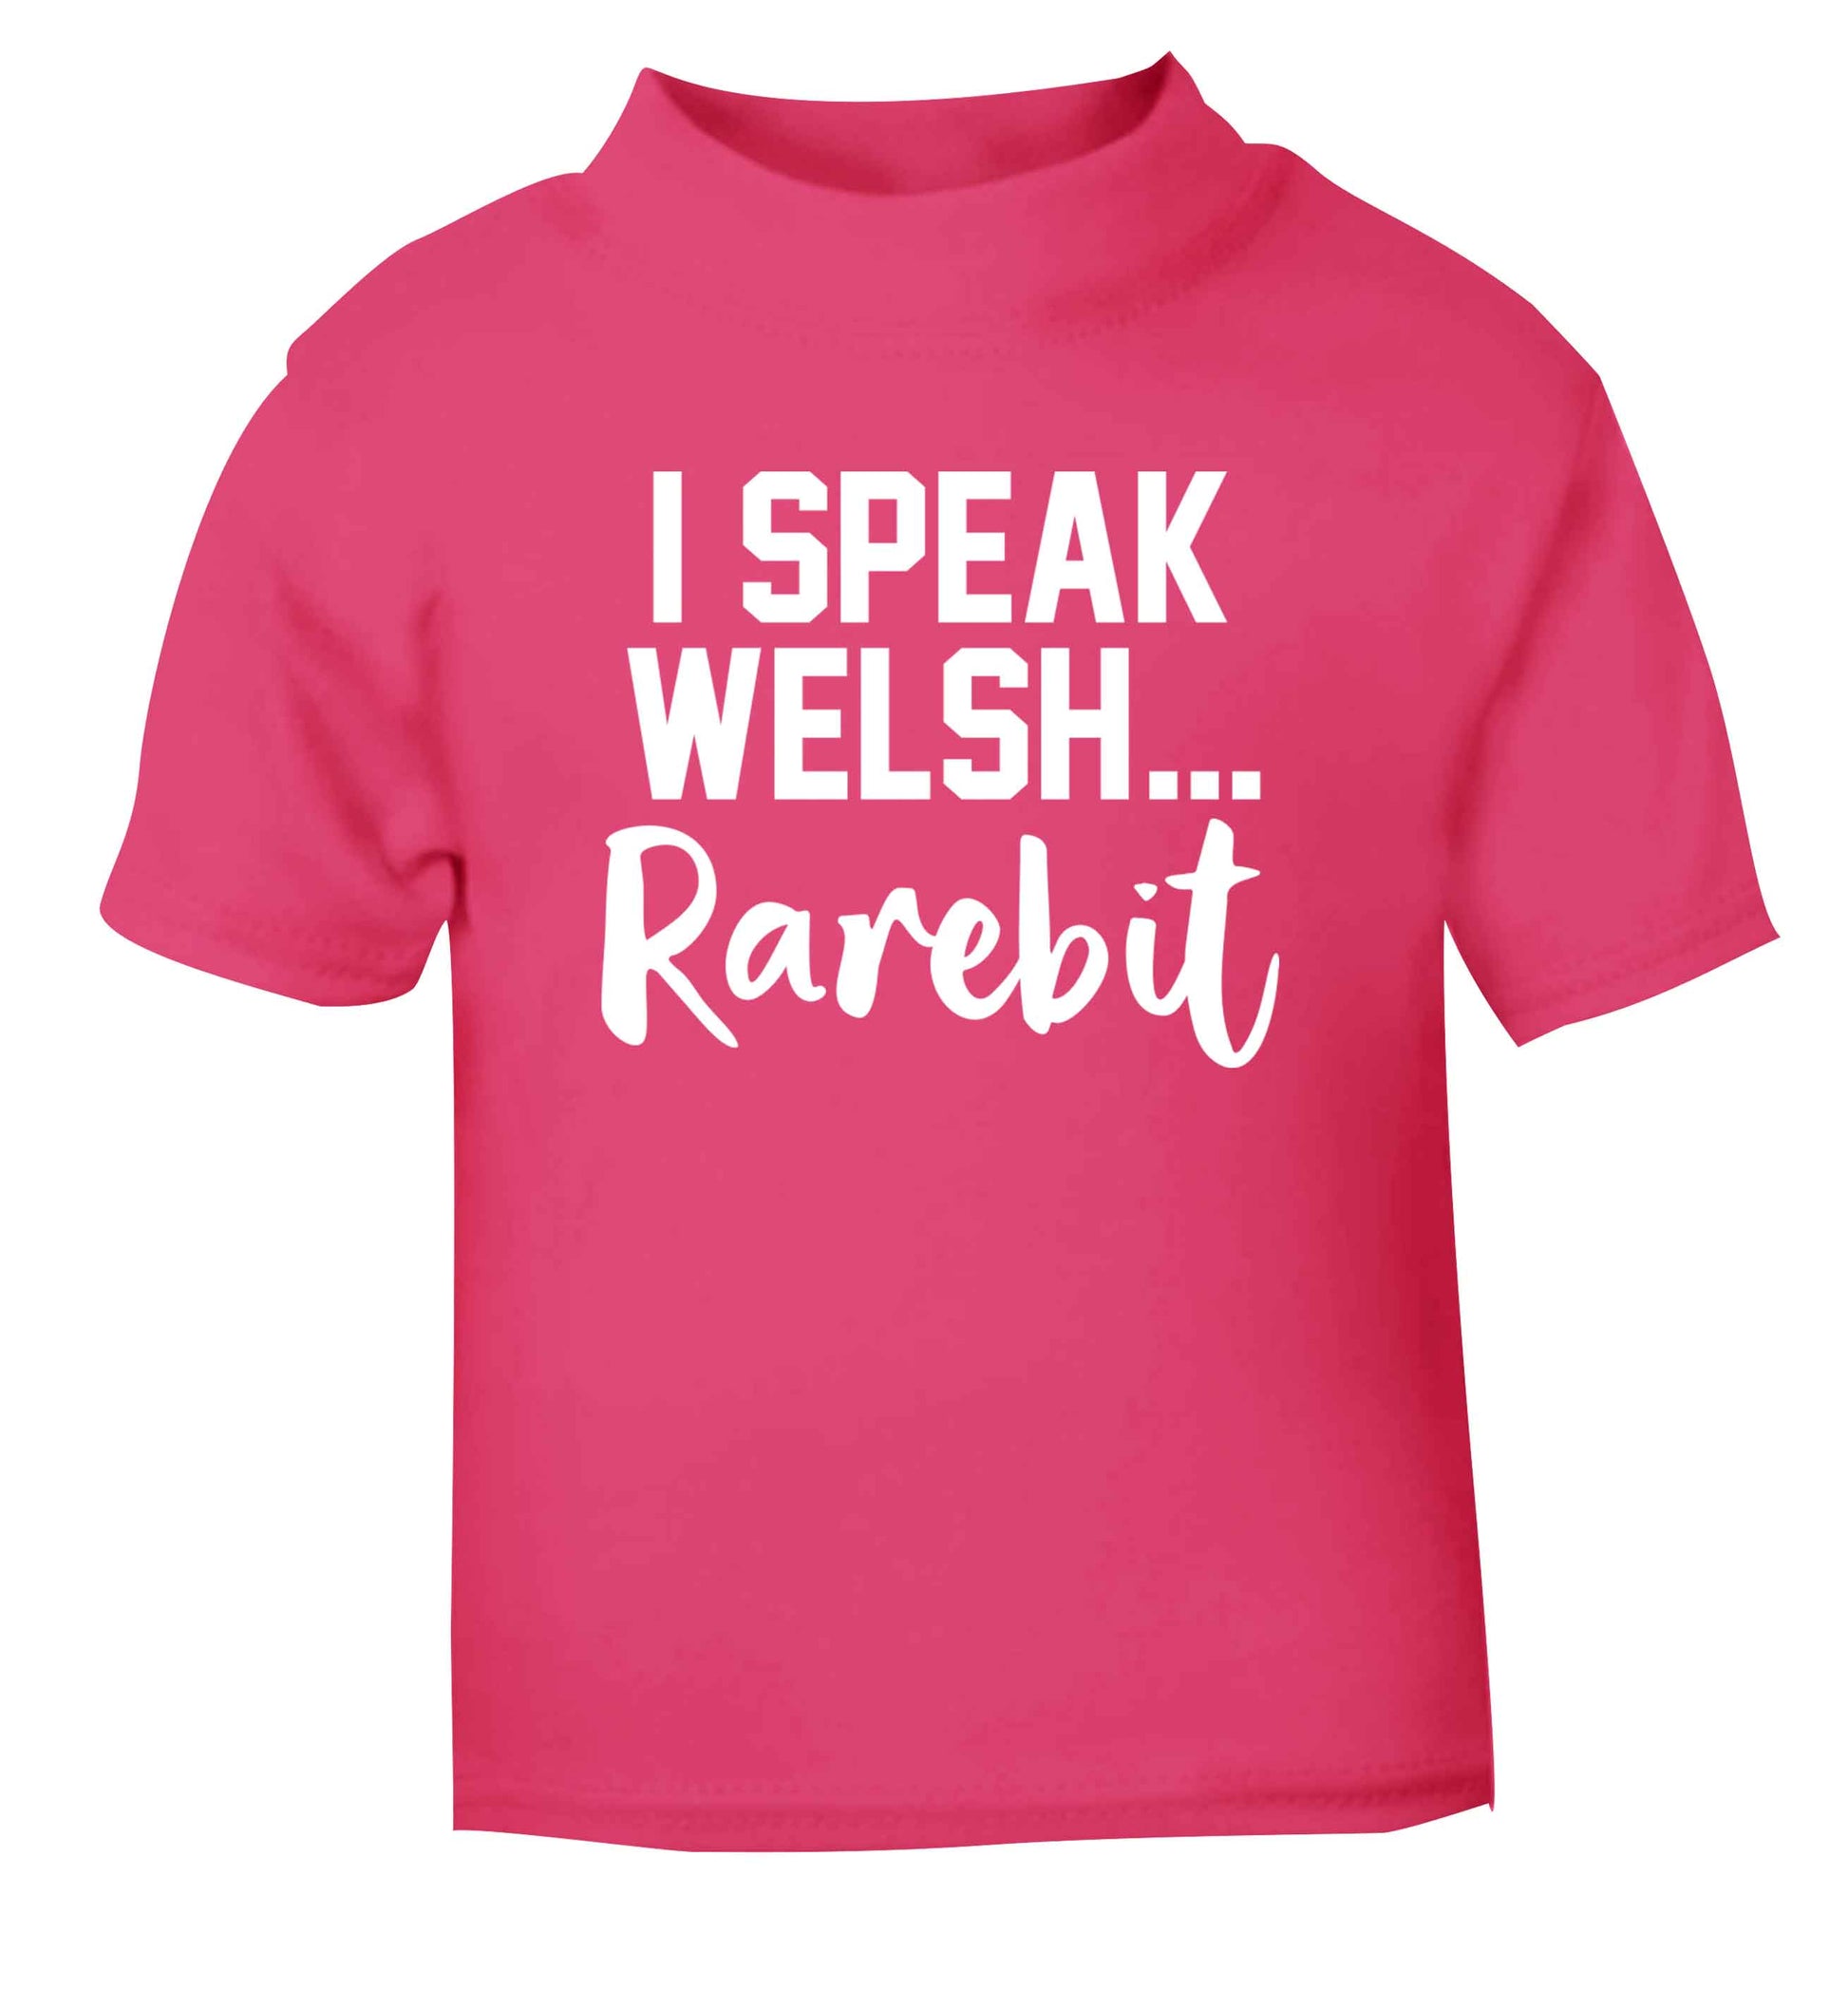 I speak Welsh...rarebit pink Baby Toddler Tshirt 2 Years